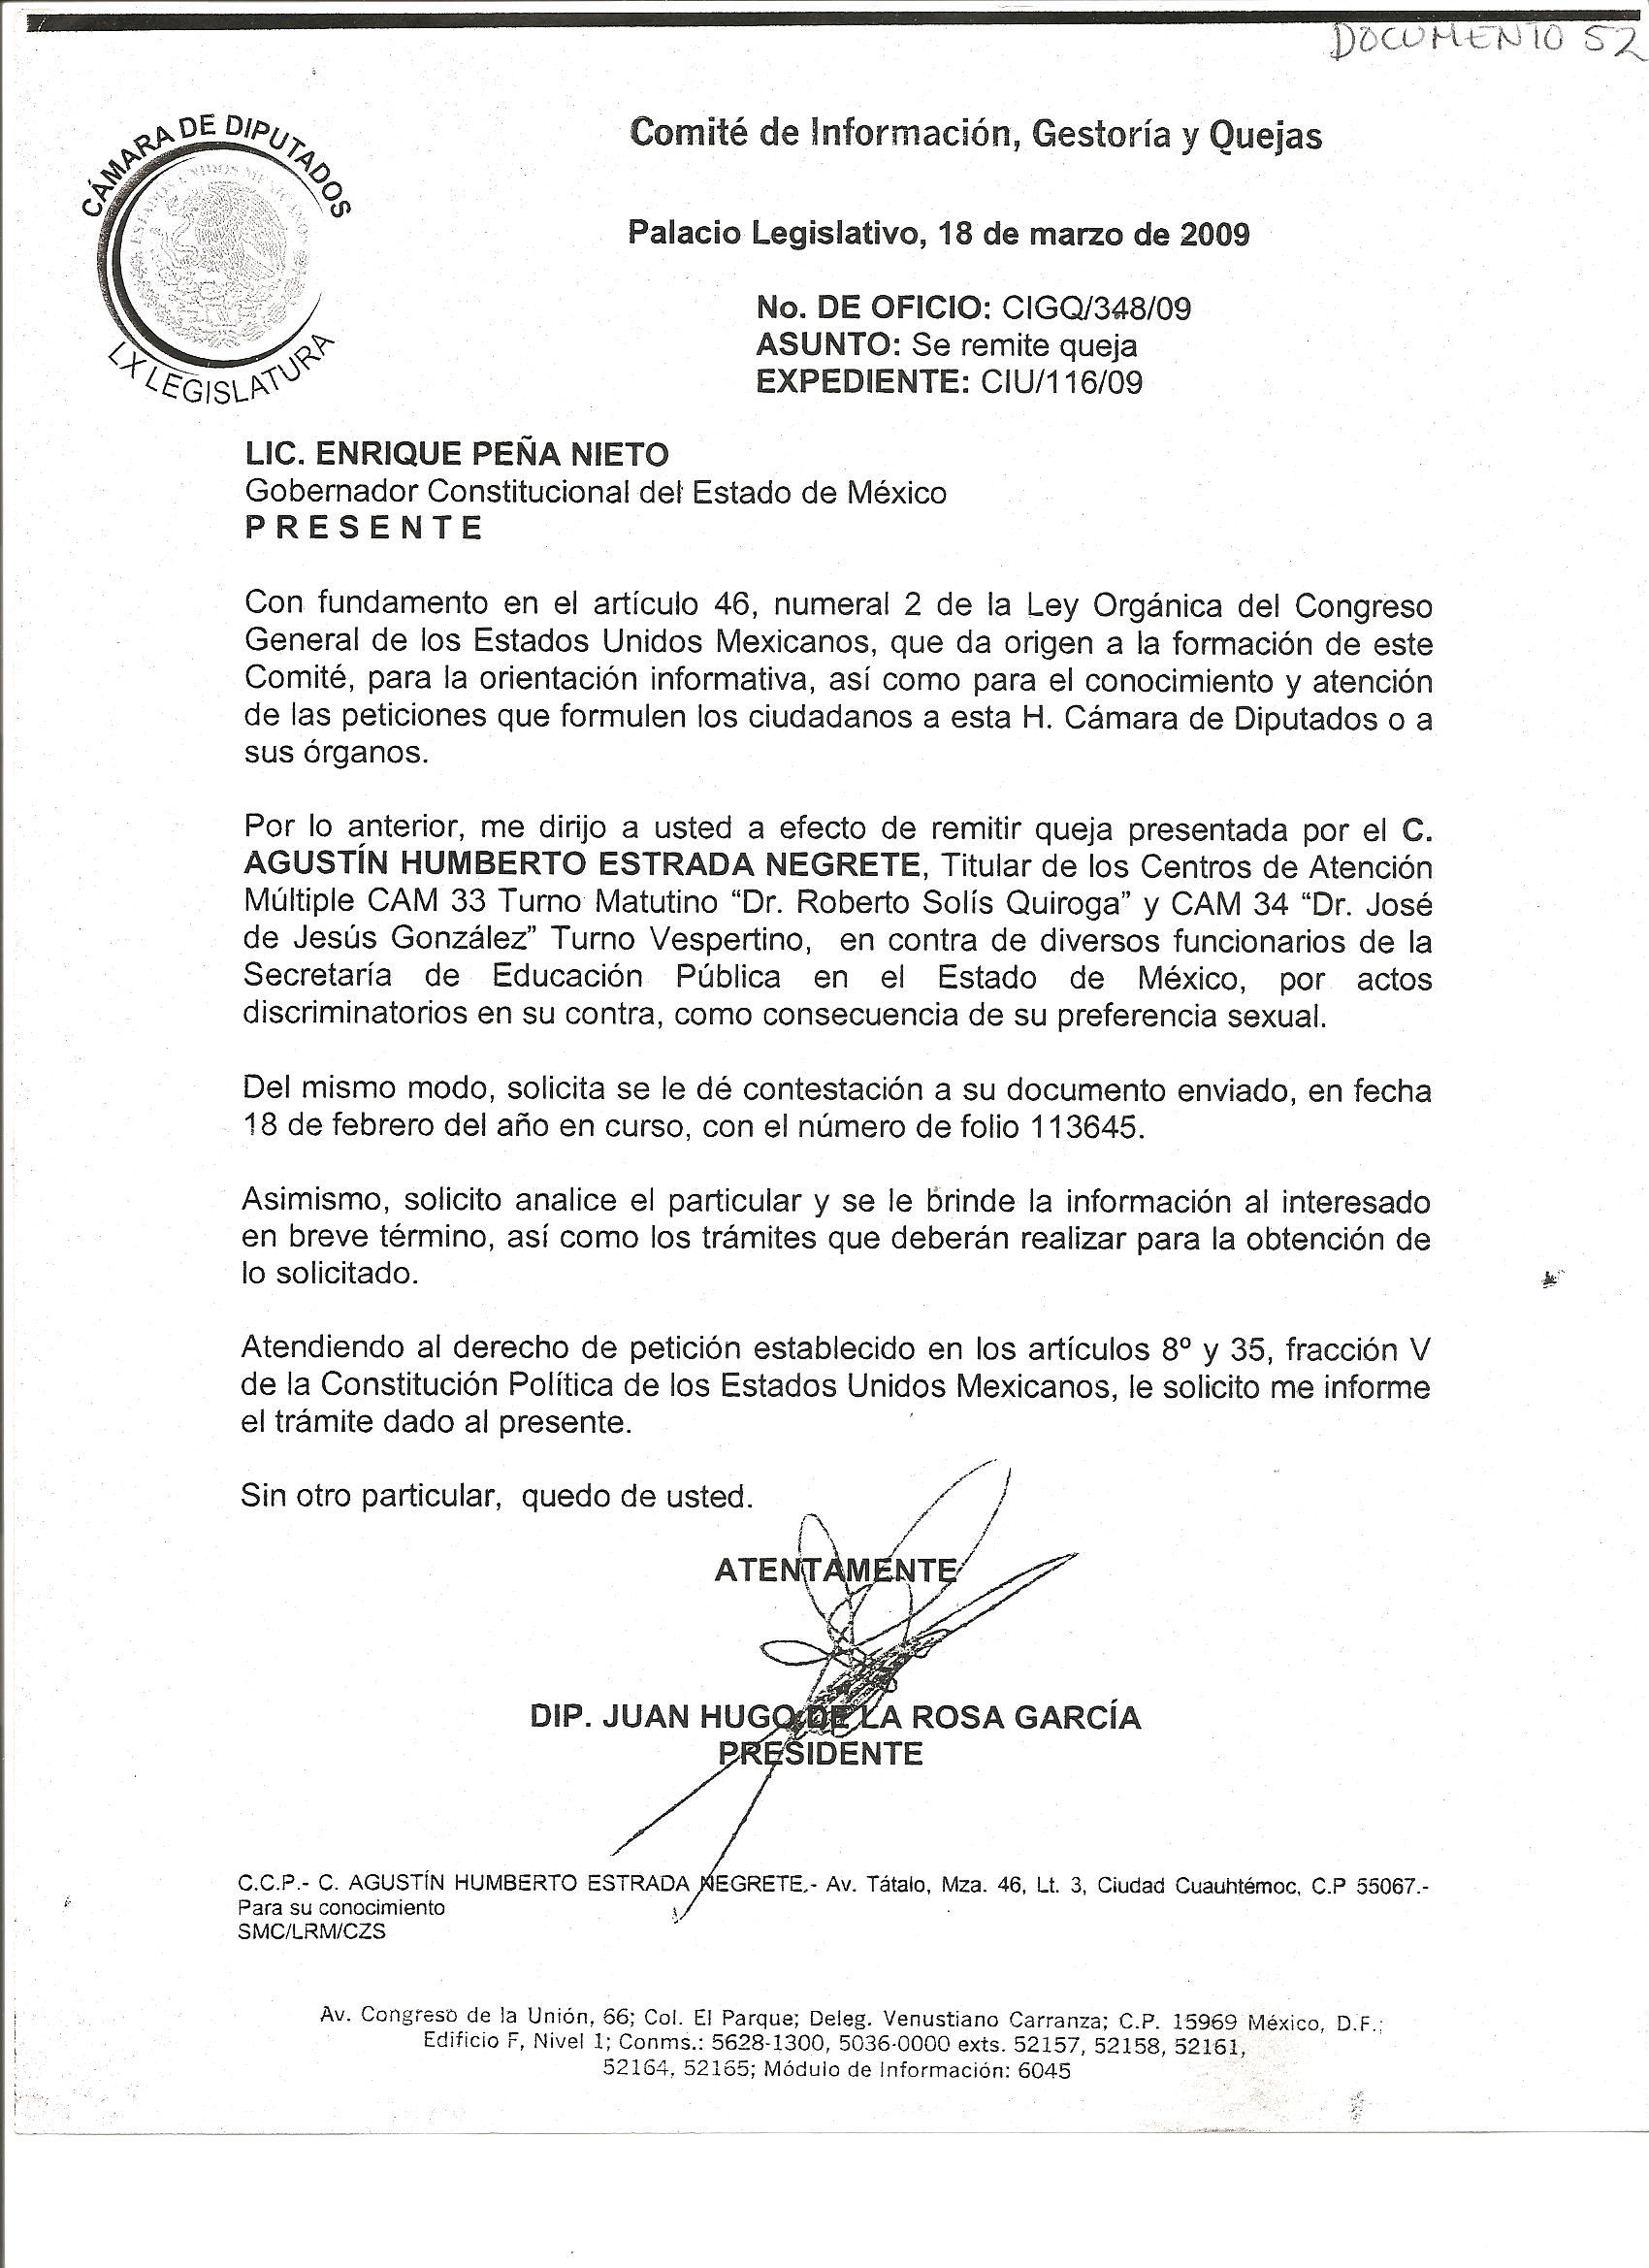 Petición de diputado federal a gobernador  Agustín 